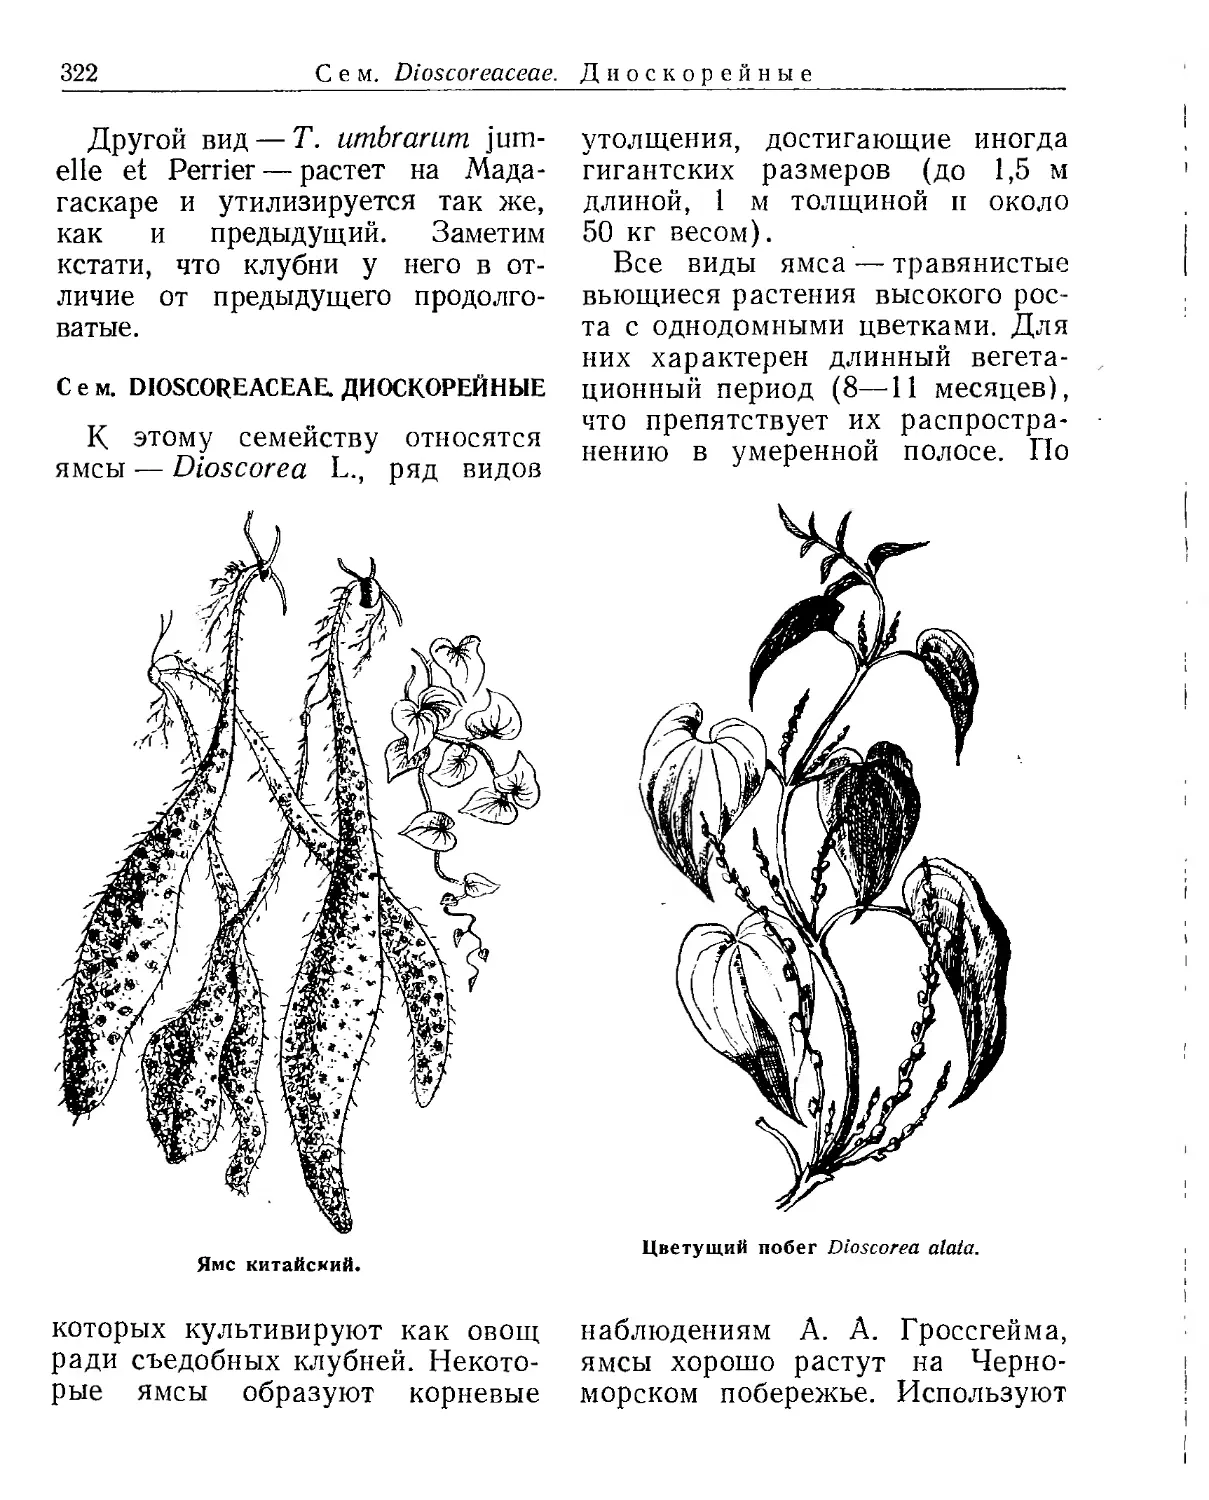 Сем. Dioscoreaceae. Диоскорейные